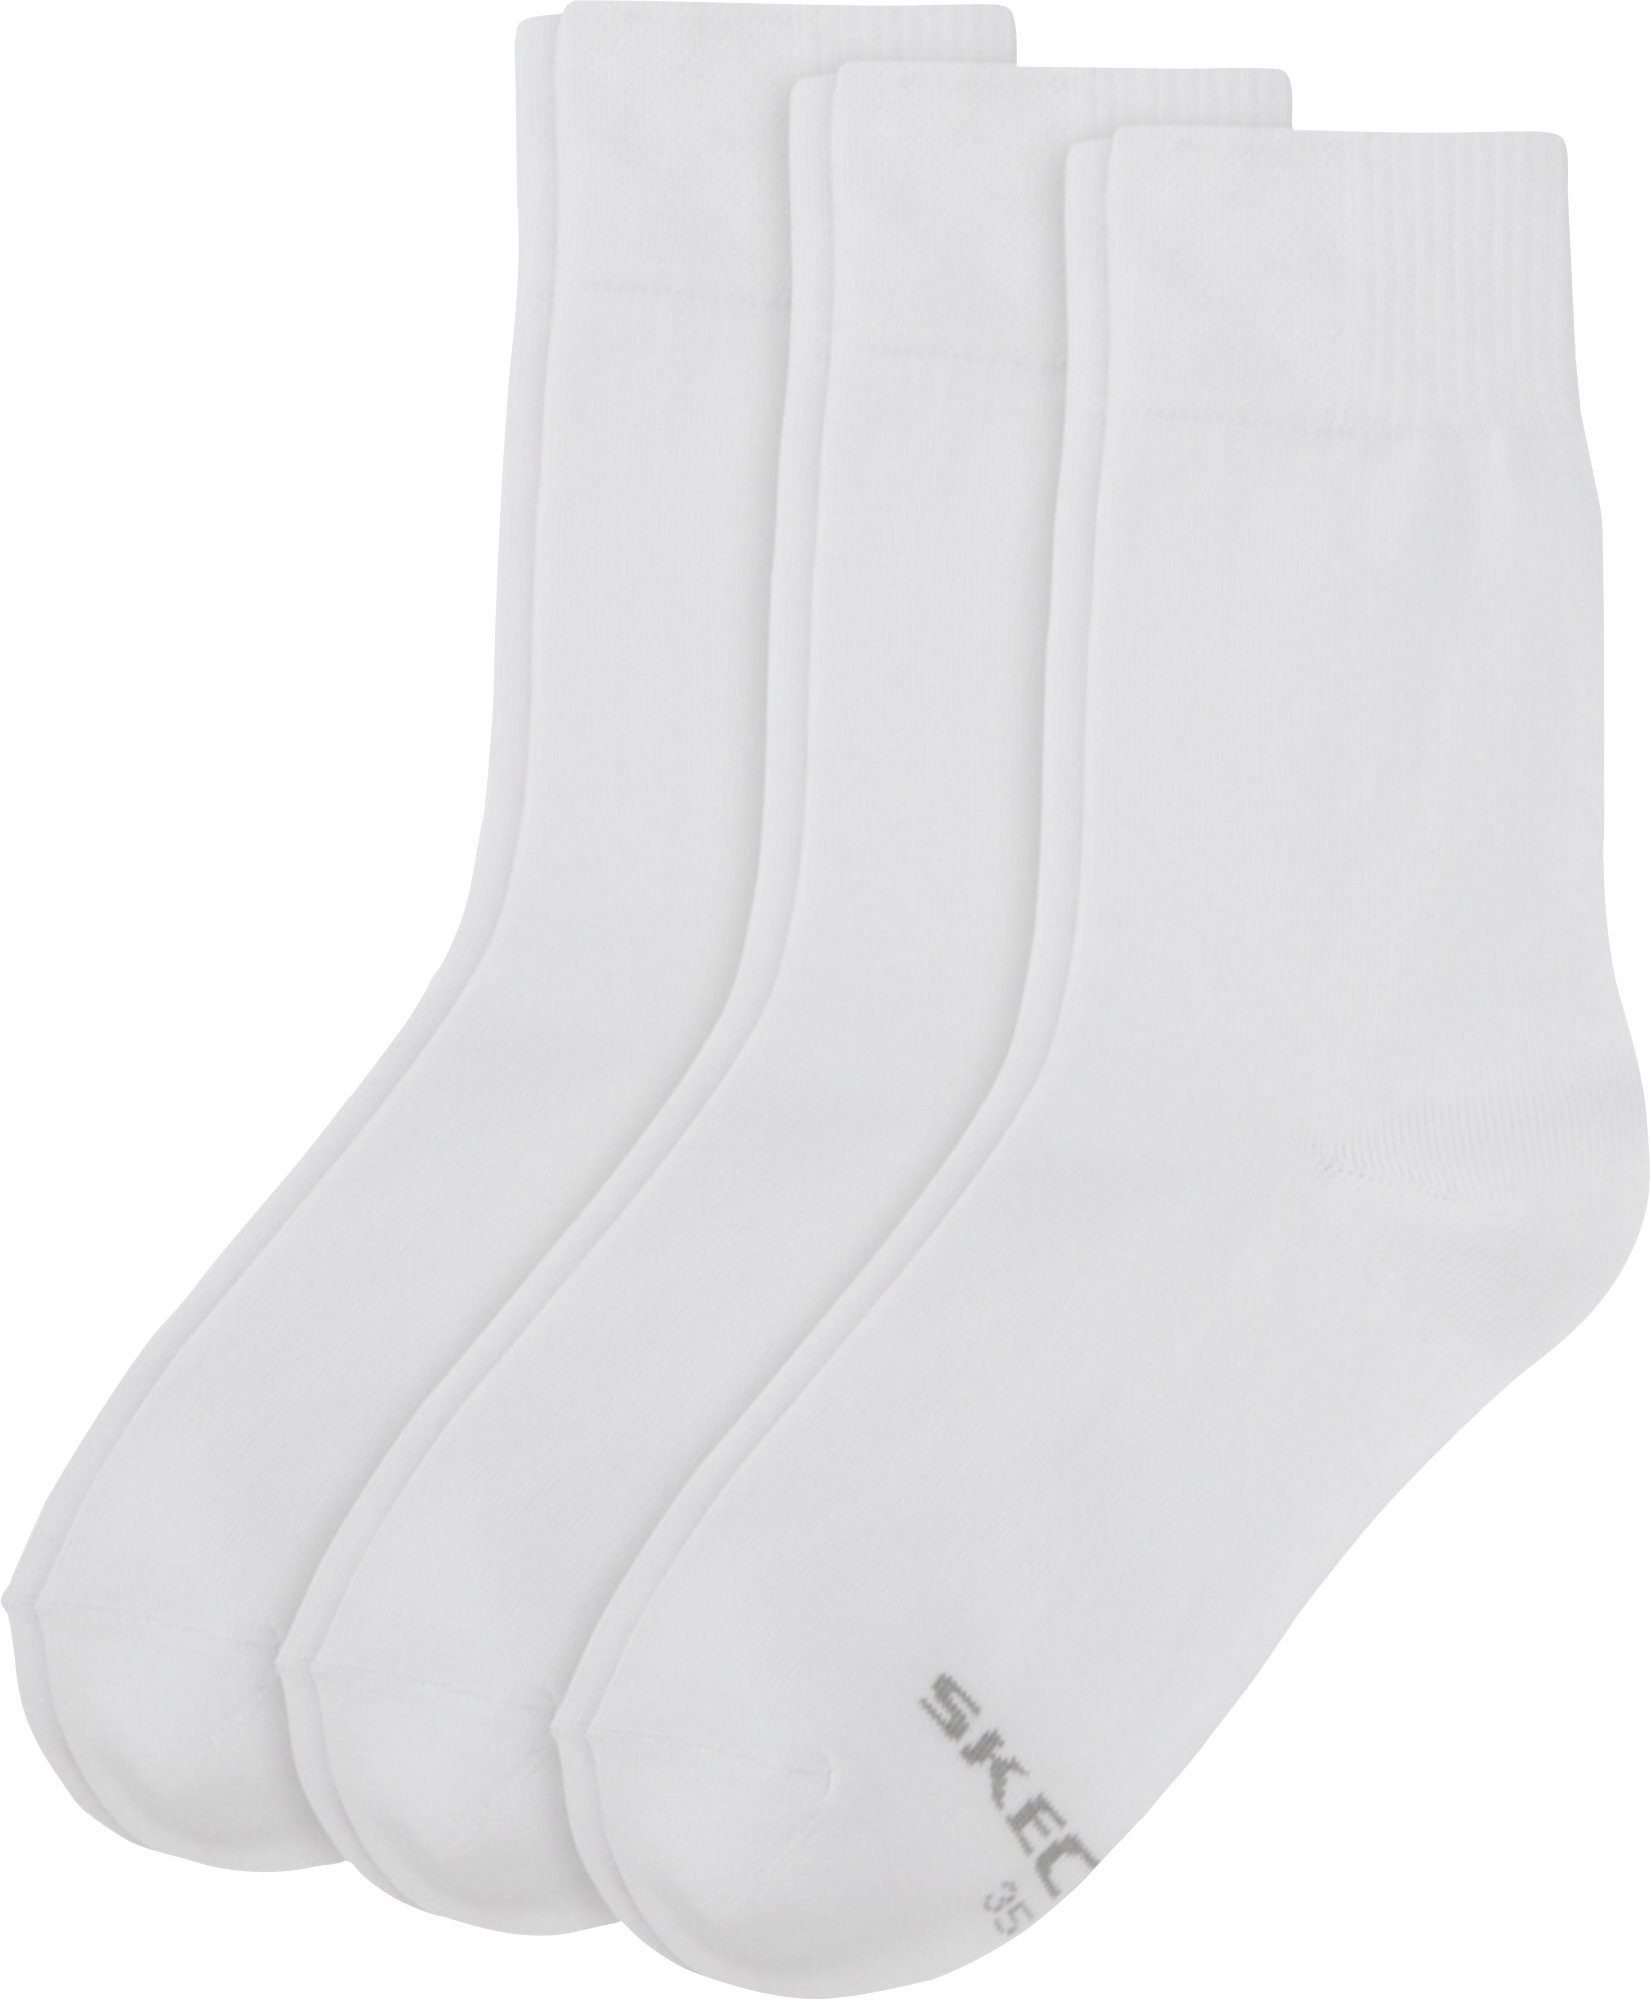 Skechers Socken Damen-Socken 3 Paar Uni weiß